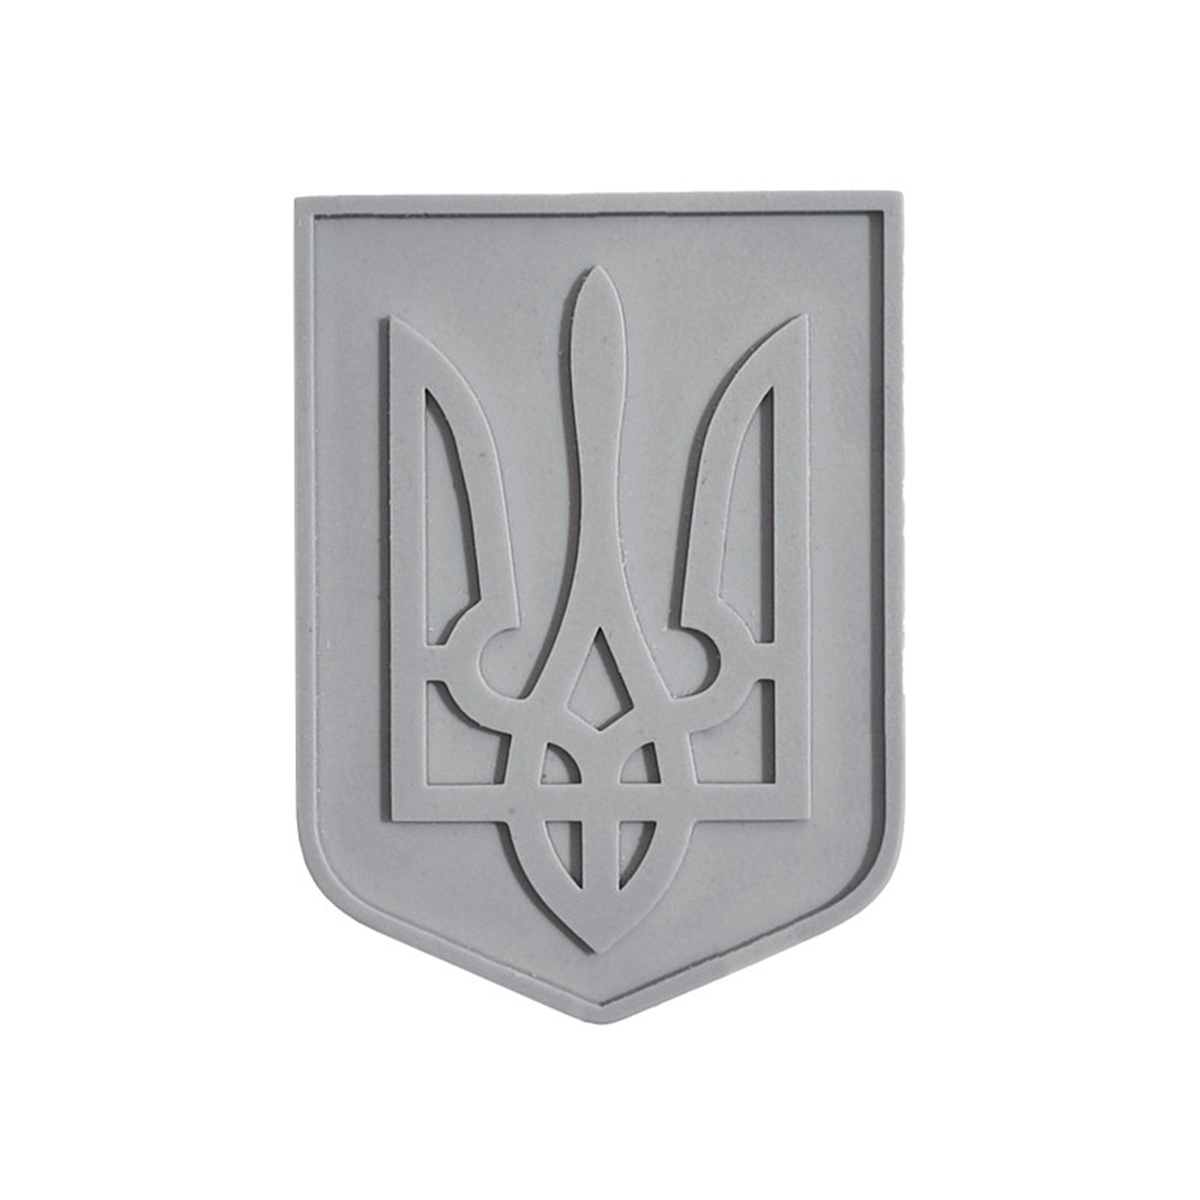 UKRAINIAN ARMY PLATE 1/35